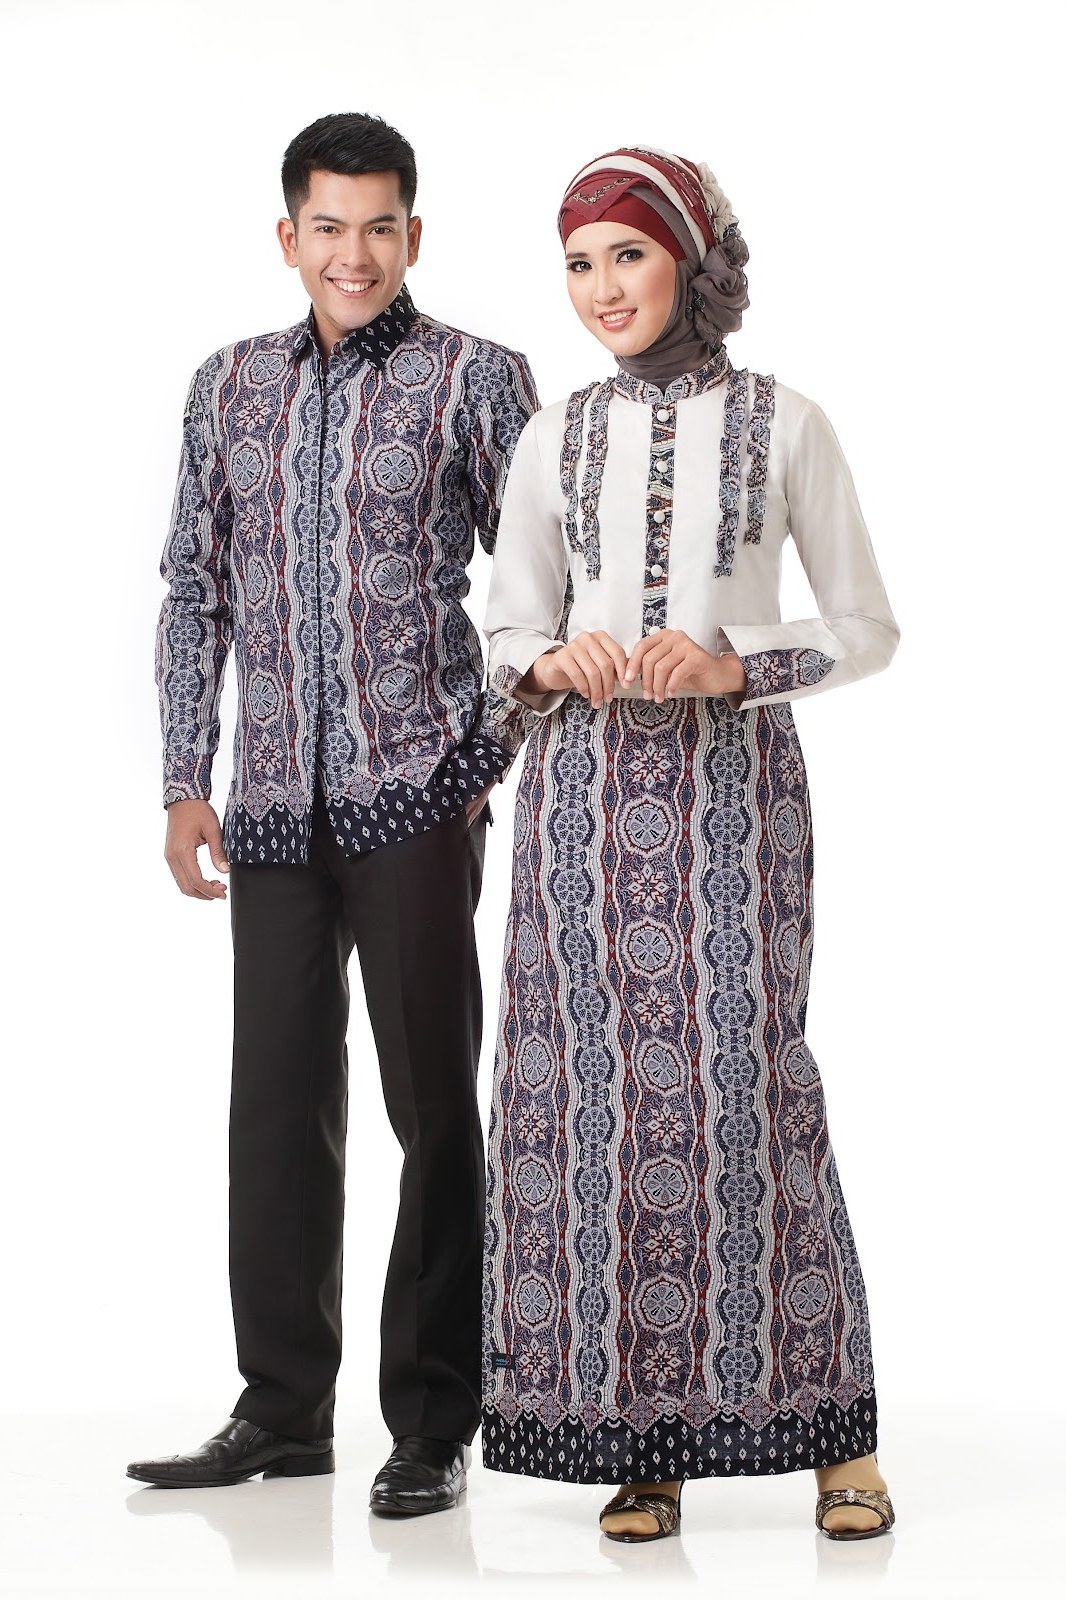 Inspirasi Baju Lebaran Batik E6d5 Kumpulan Model Baju Batik Lebaran 2013 Terbaru Terpercaya